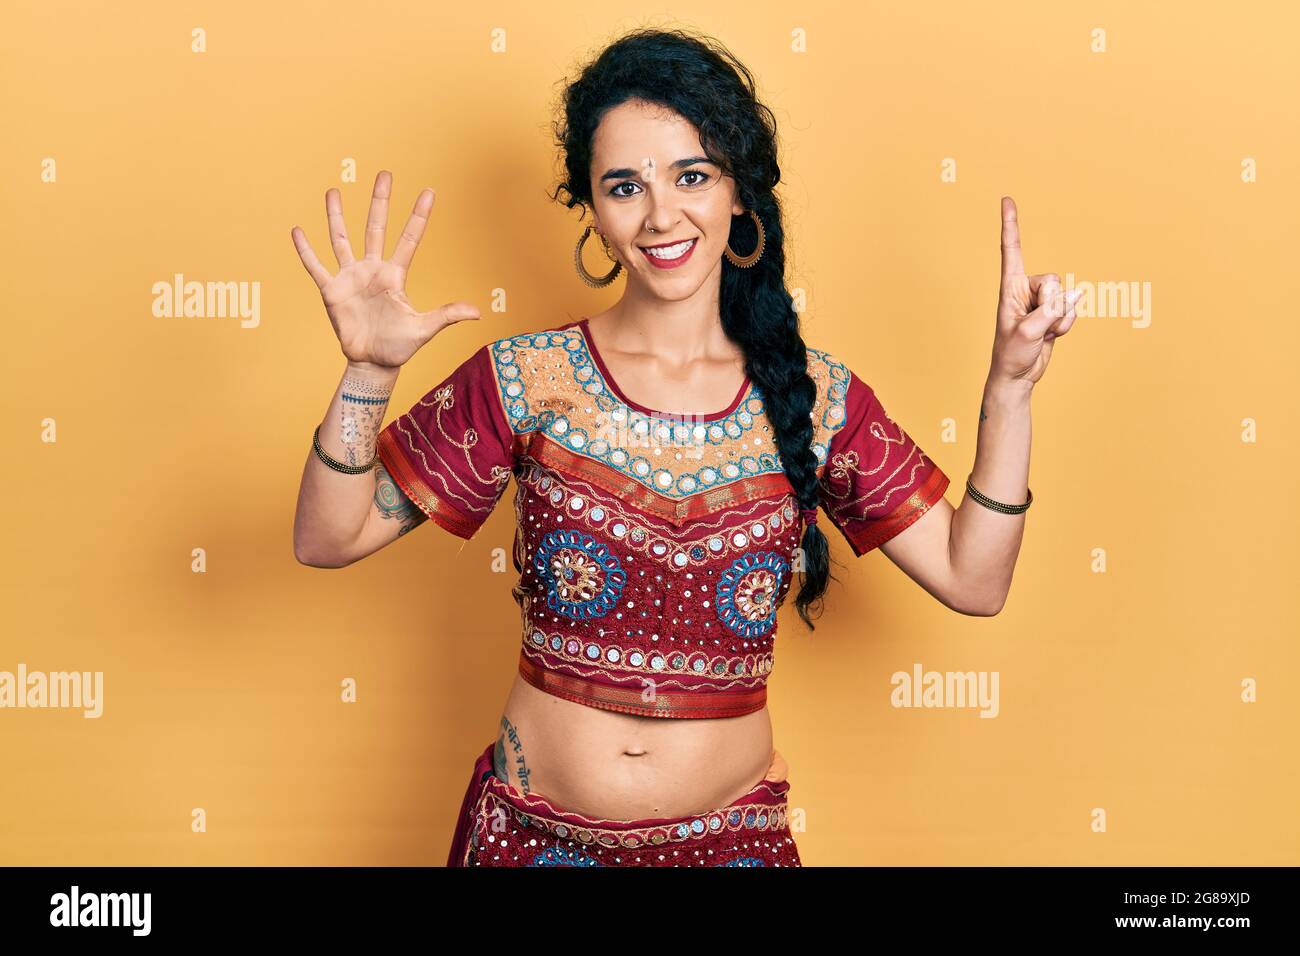 Junge Frau in Bindi- und bollywood-Kleidung zeigt und zeigt mit den sechs Fingern nach oben, während sie selbstbewusst und glücklich lächelt. Stockfoto